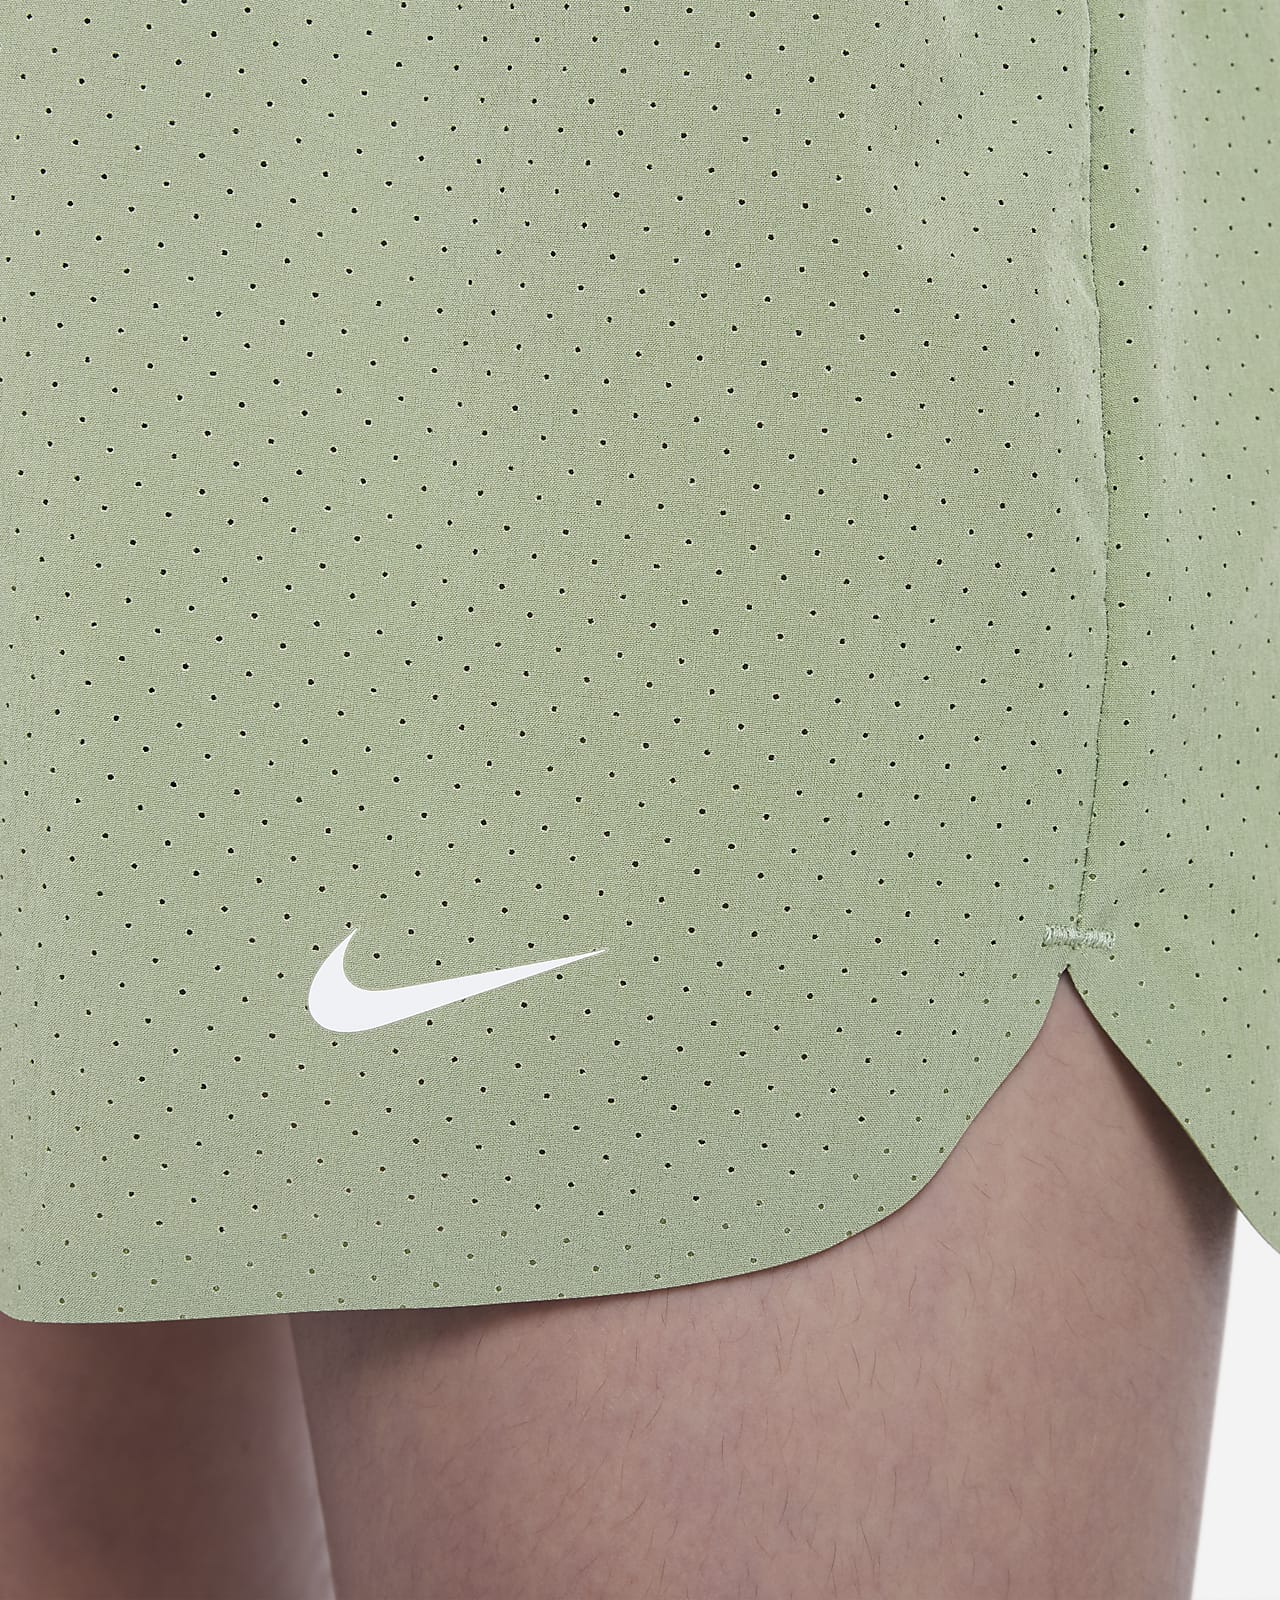 Nike Dri-FIT Sport Essentials+ 10K2 Big Kids' (Girls') Running